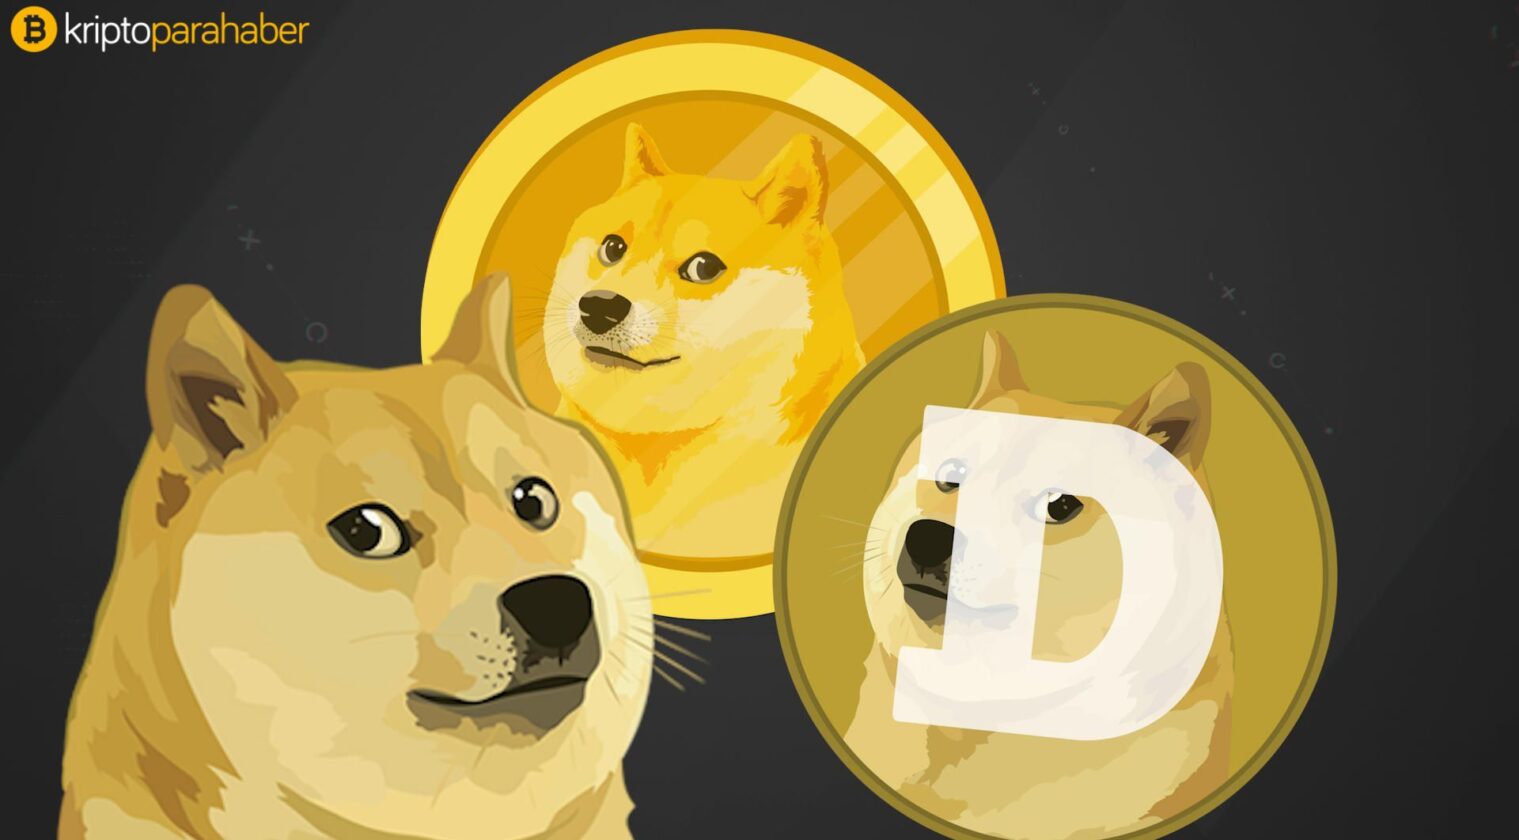 Guy Fieri destekçiler listesine katılırken Dogecoin'in günlük işlem hacmi 4,5 milyar doları aştı